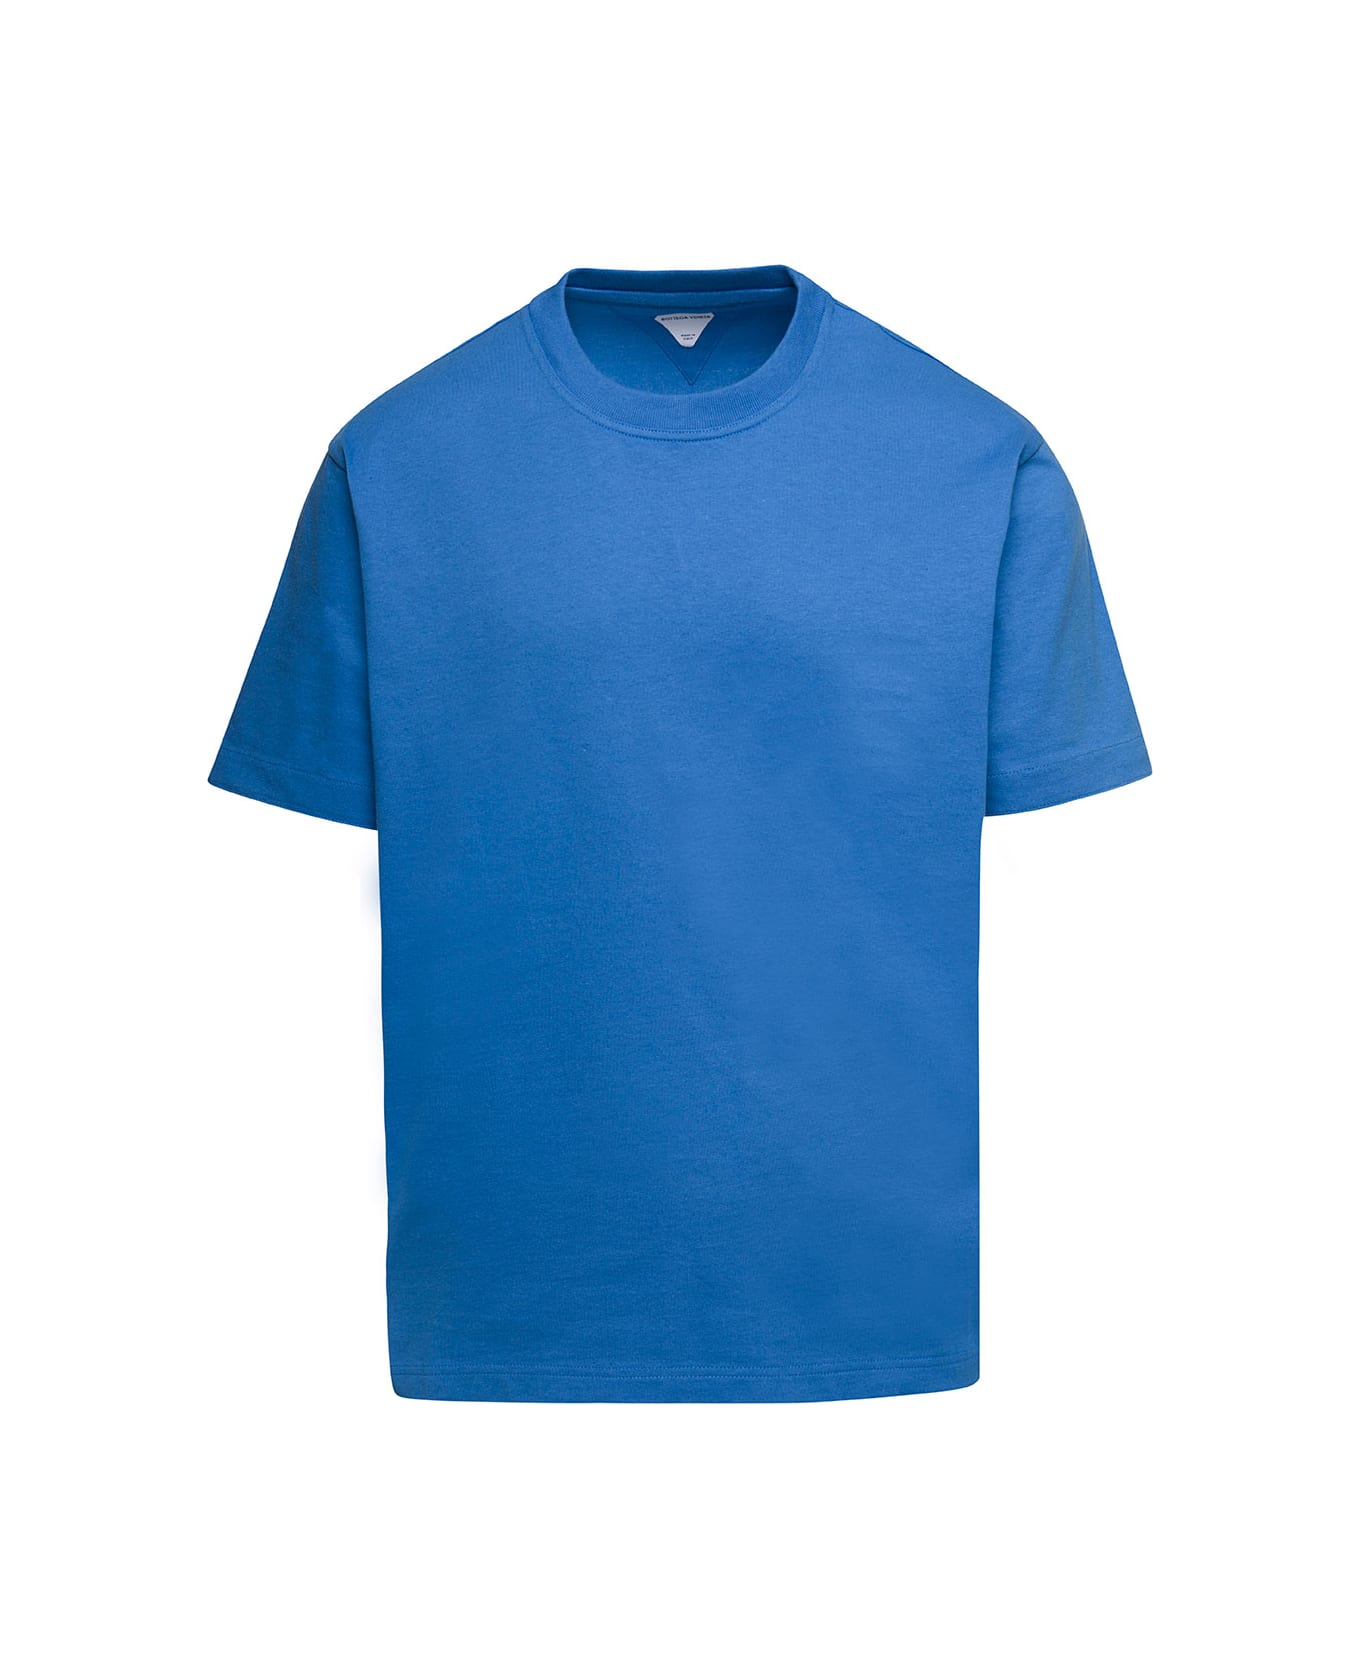 Bottega Veneta Sunrise Cotton T-shirt - Surf シャツ